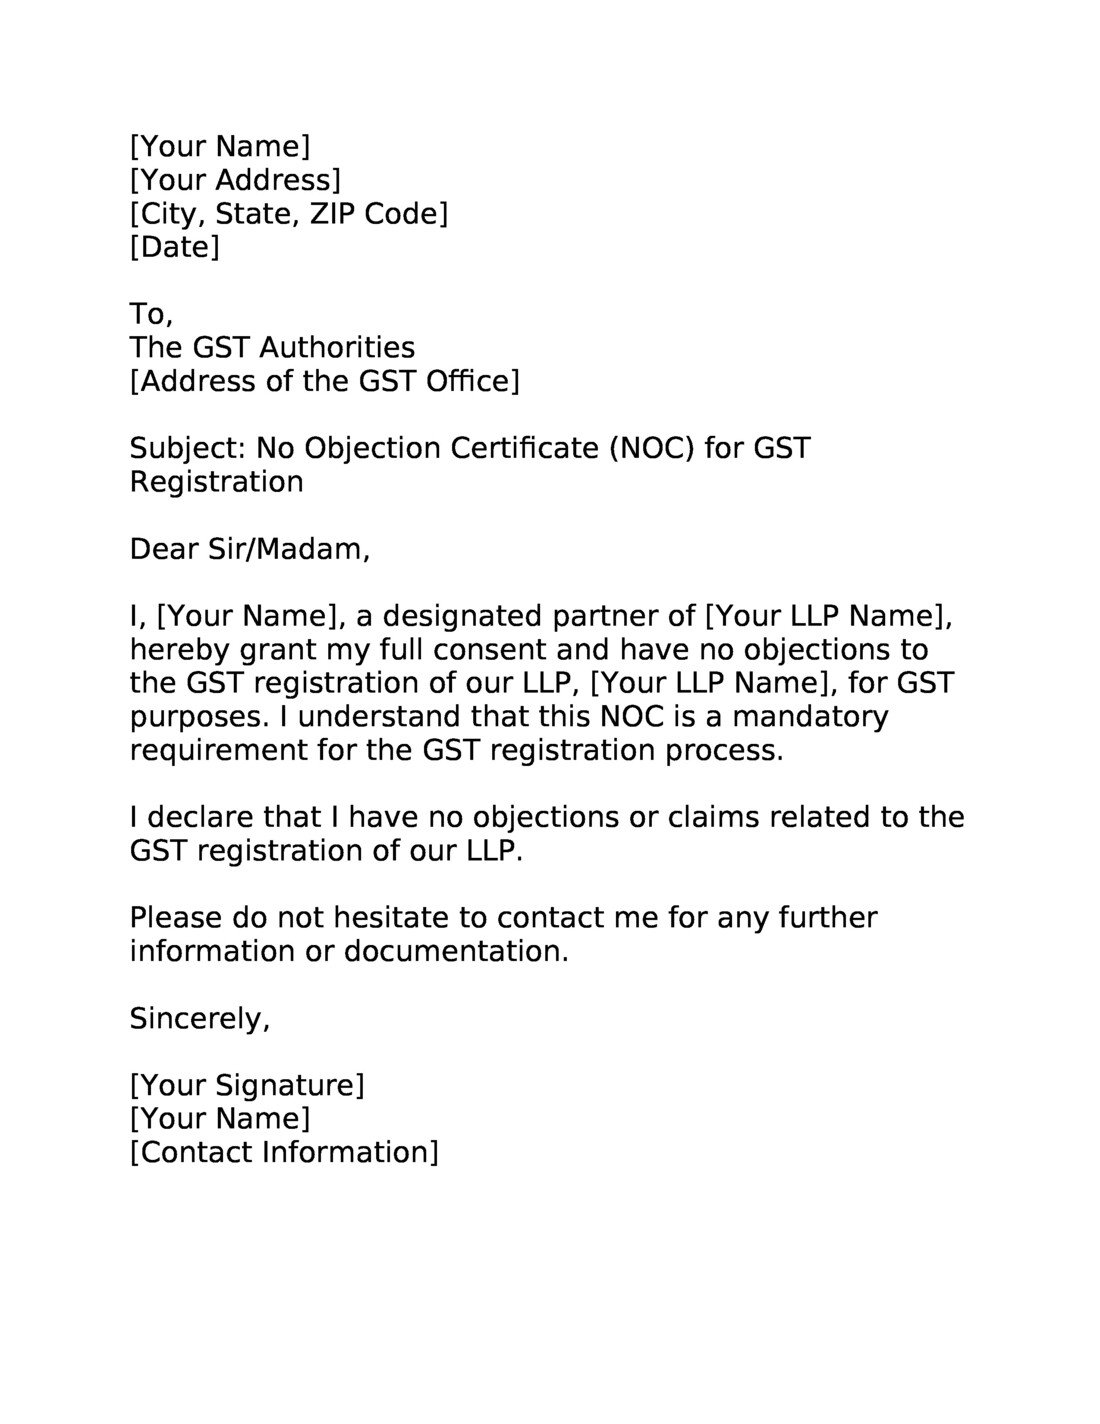 NOC Letter from Partner for GST Registration (LLP)